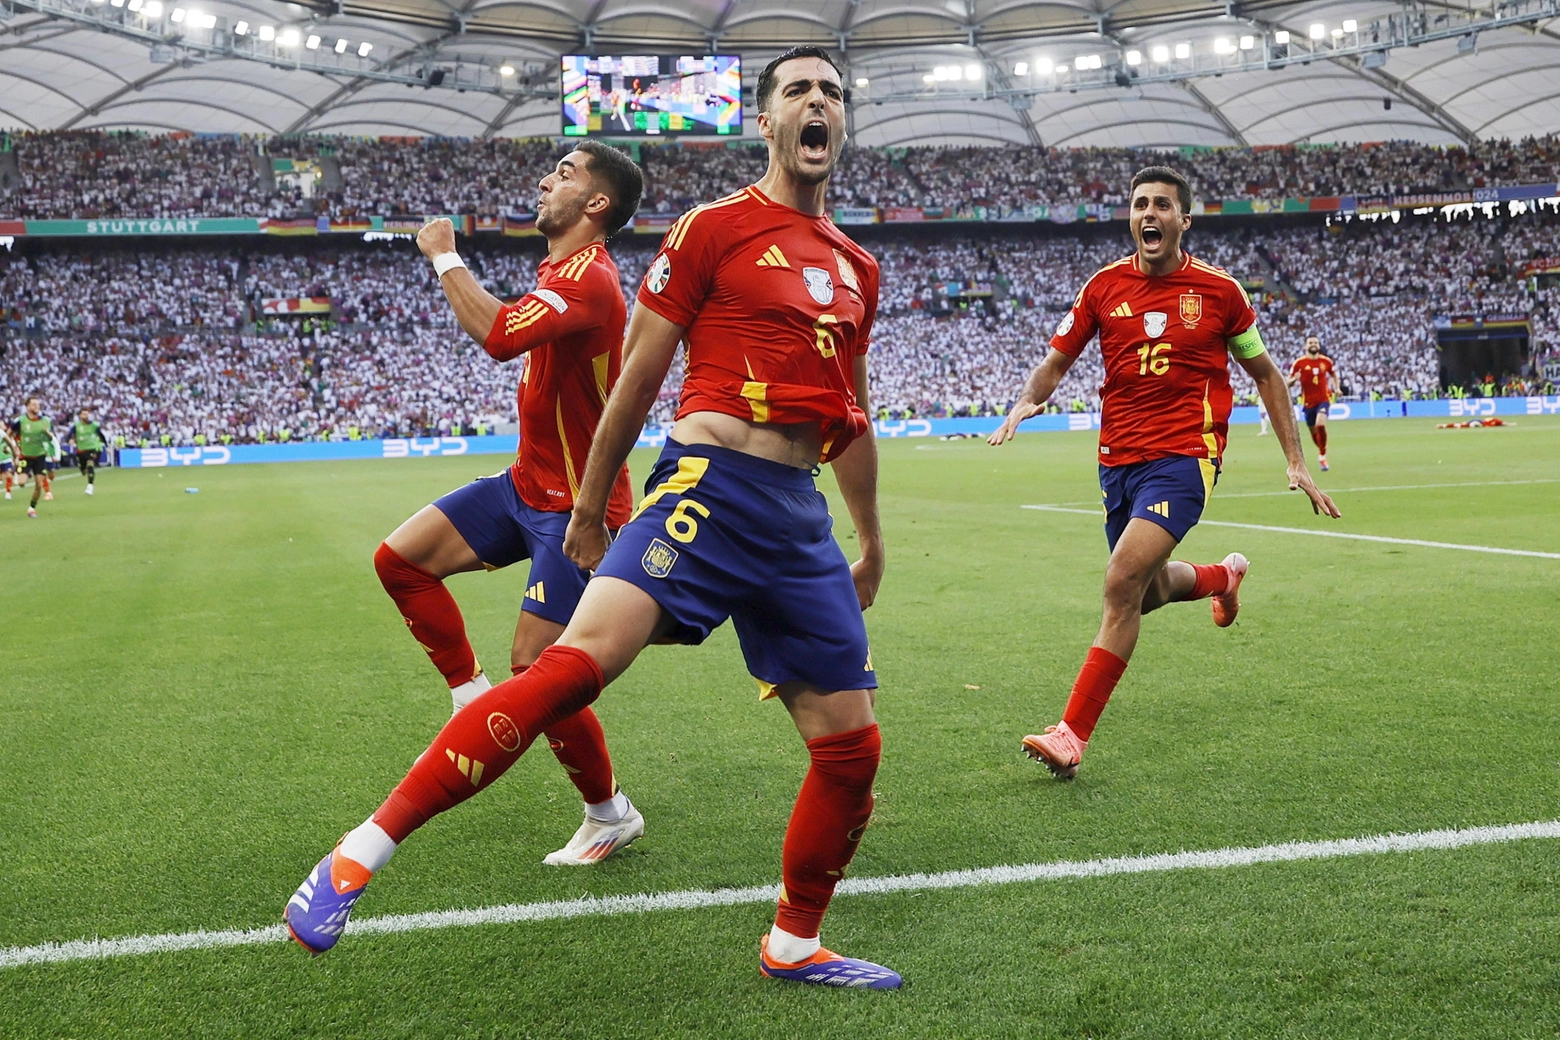 L'esultanza dei giocatori spagnoli dopo la vittoria contro la Germania